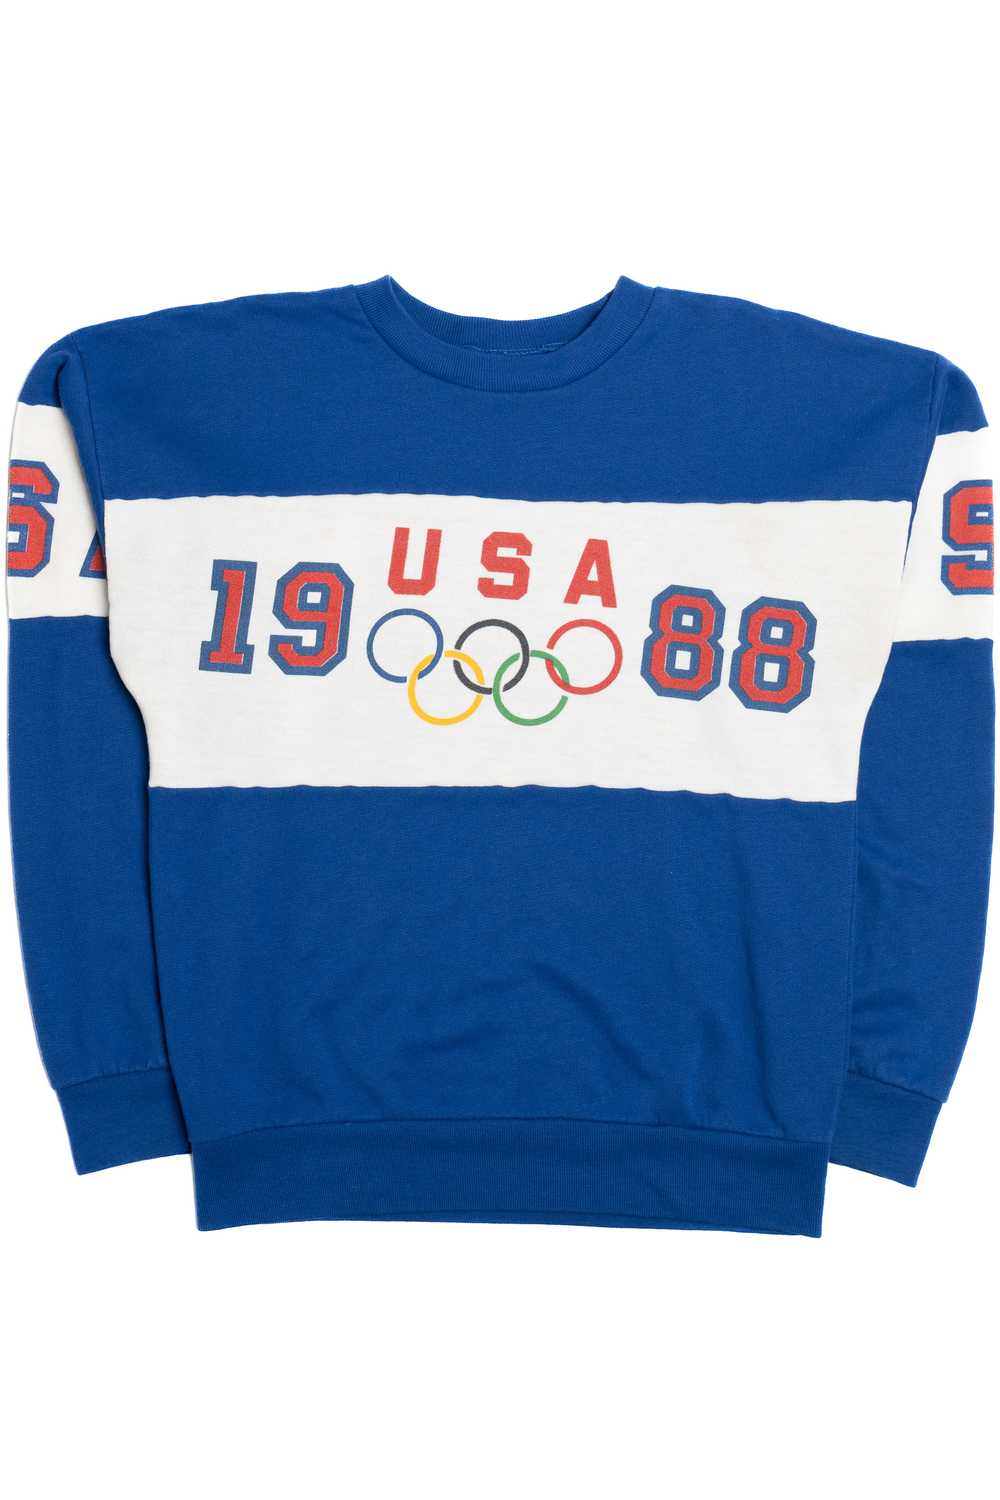 Vintage 1988 USA Olympics Sweatshirt - image 1